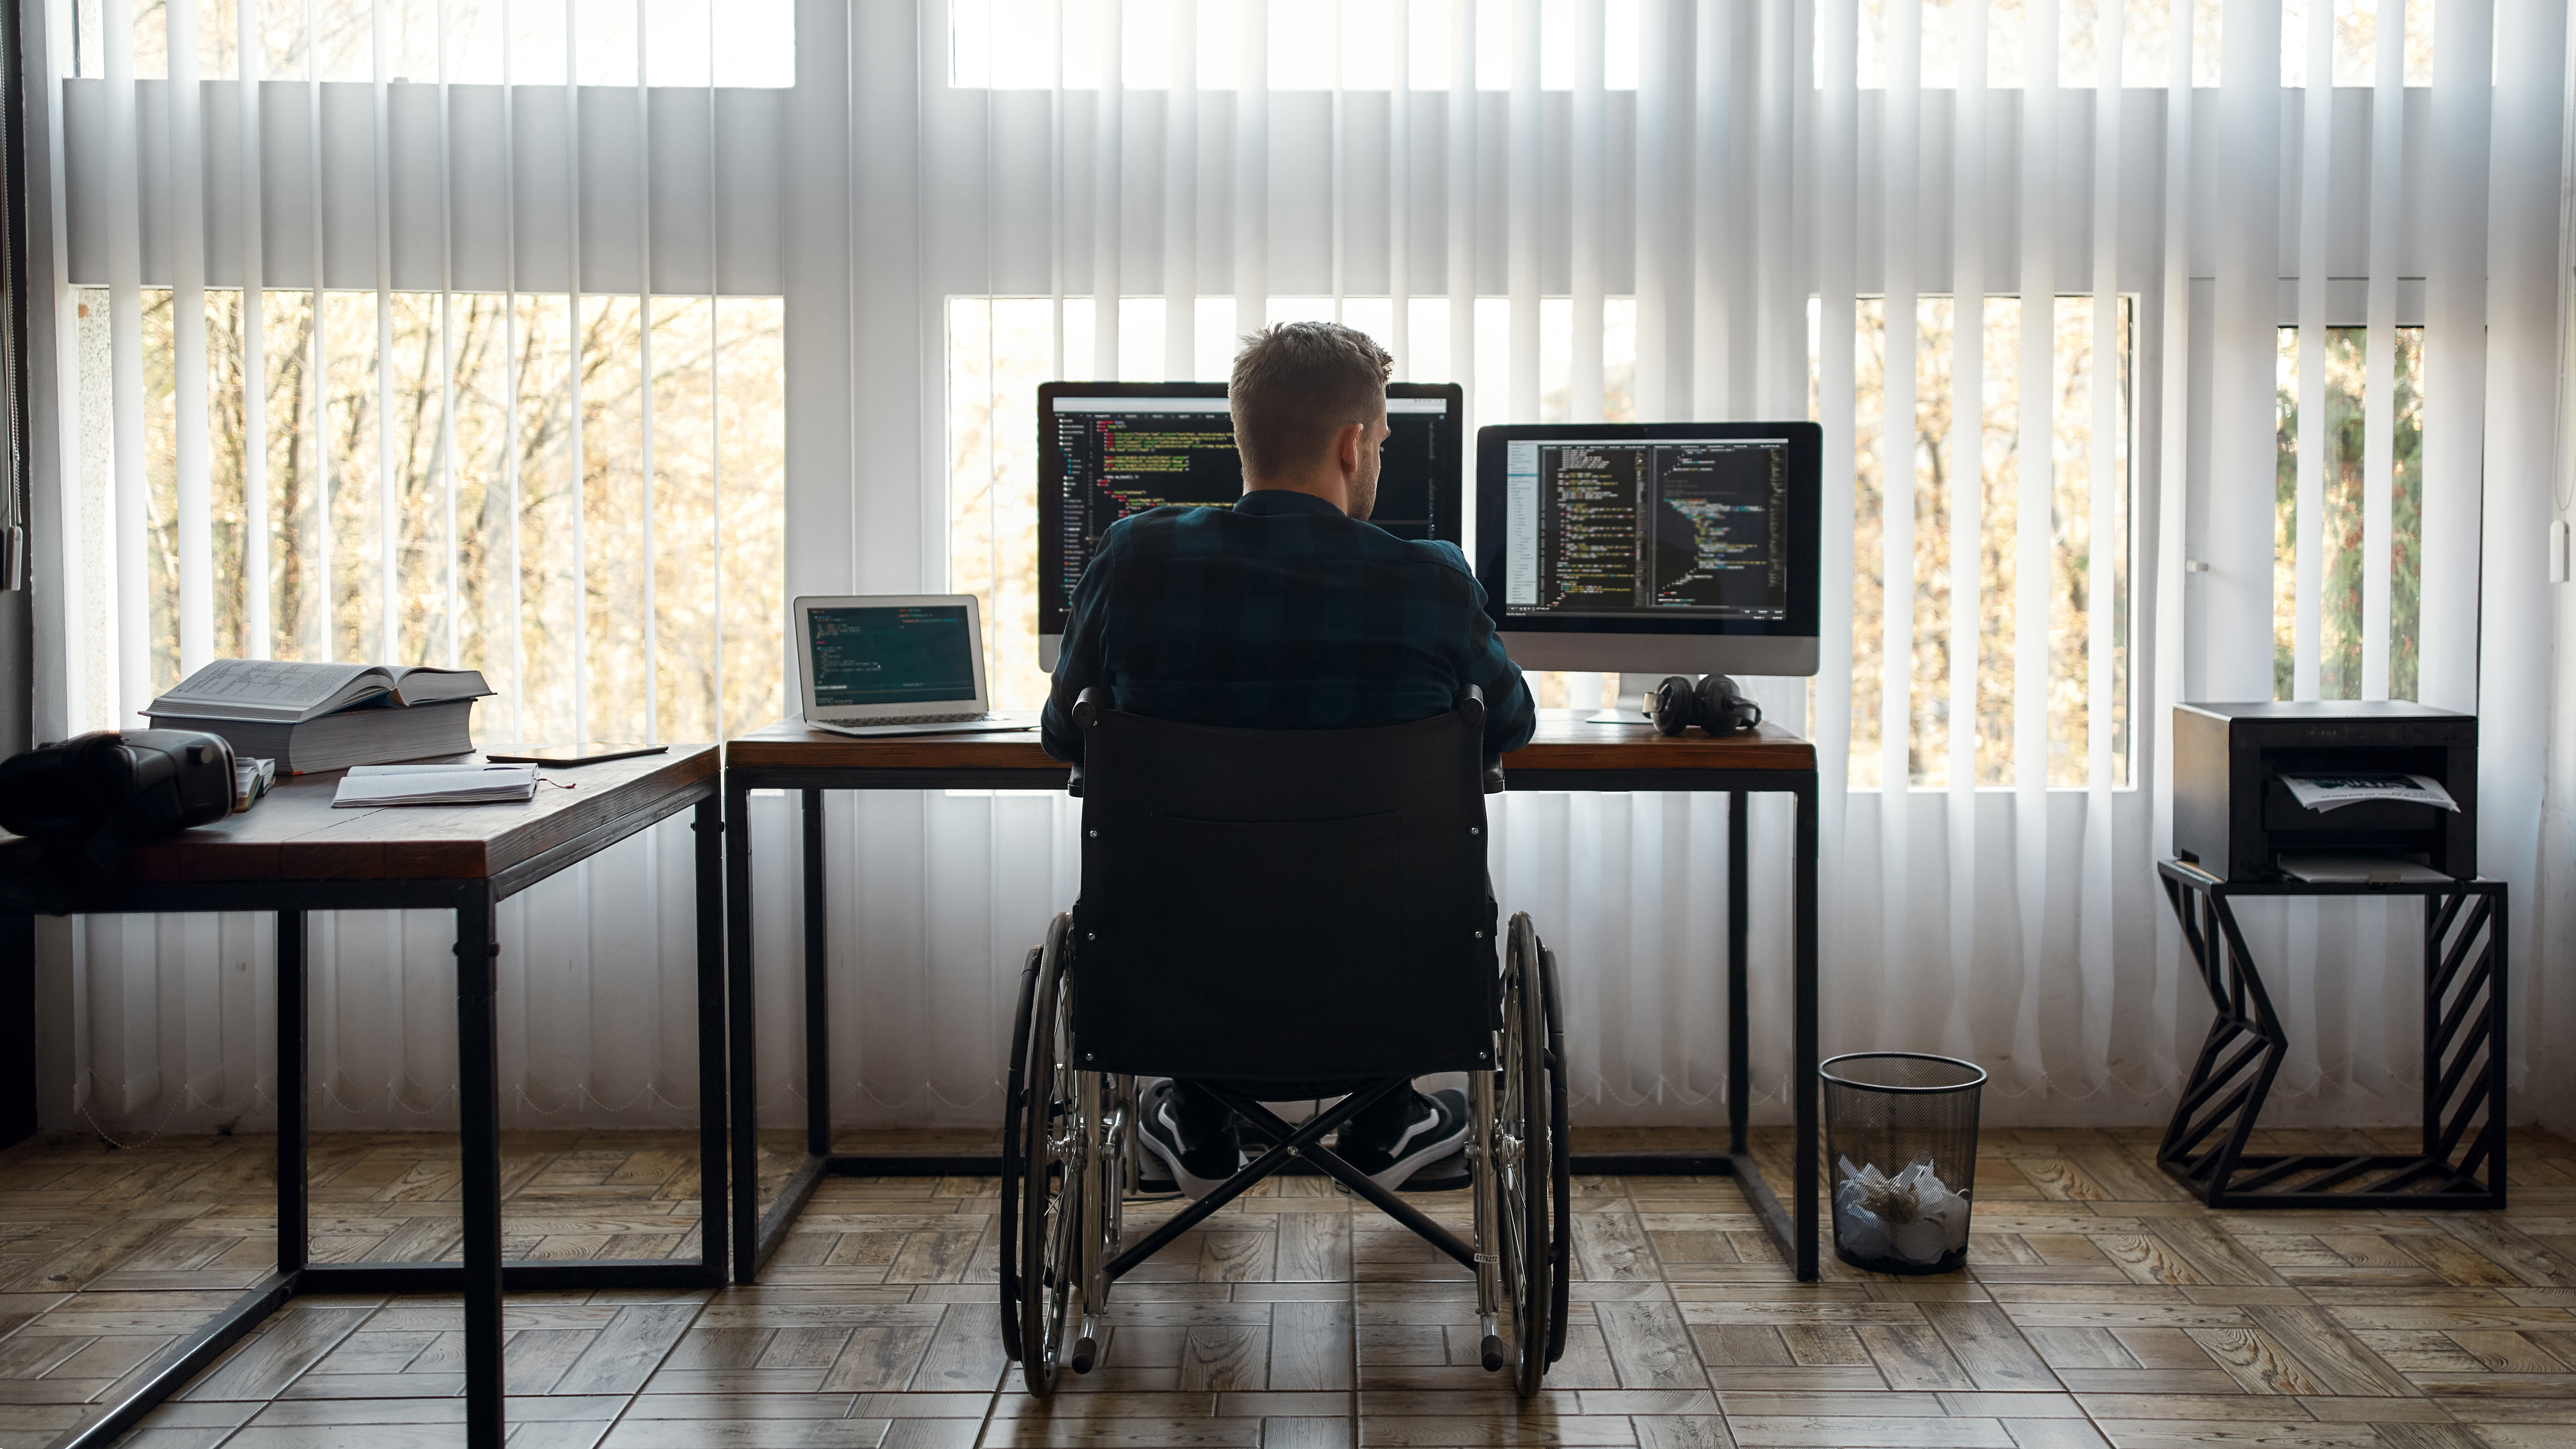 Persona en silla de ruedas trabajando delante de dos pantallas de ordenador